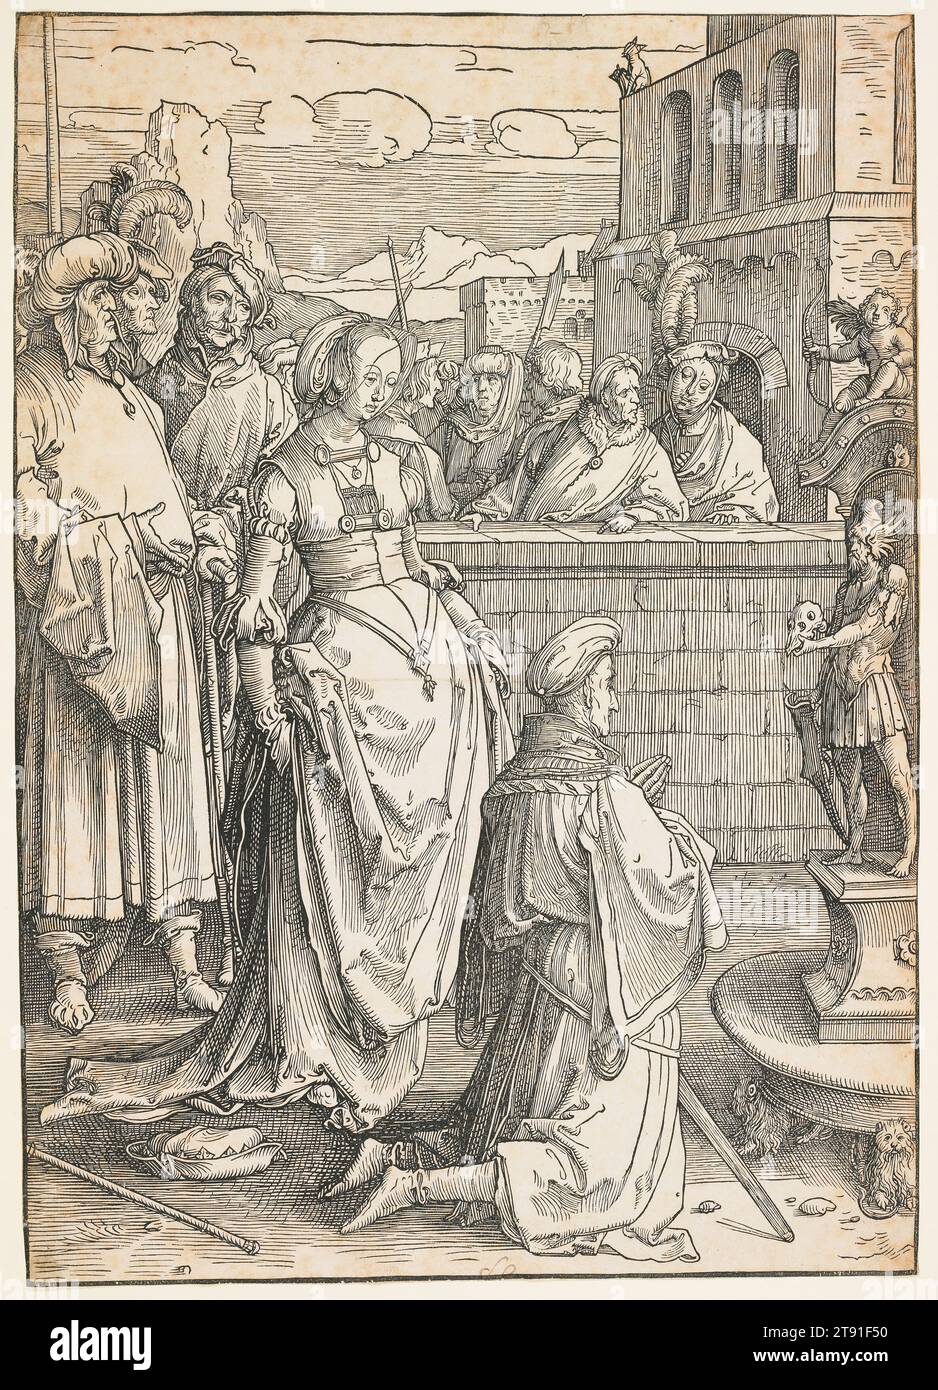 Solomon's idolatry, c. 1512, Lucas Huygensz van Leyden, Dutch, c. 1490 - 1533, 16 3/8 x 11 9/16 pollici (41,59 x 29,37 cm) (immagine), Woodcut, Paesi Bassi, XVI secolo, il tono moralizzante di questa stampa è chiaro dall'uomo a sinistra, che istruisce un dandy mustachiato su come una donna possa trasformare anche il saggio Salomone in uno sciocco. Legato al tema del potere delle donne è la follia di preoccuparsi troppo profondamente delle qualità temporali come la forza e la saggezza, e l'idolo qui riflette questa idea. Il costume militare suggerisce la vanità del potere; il cranio simboleggia la transitorietà degli inseguimenti terrestri. Foto Stock